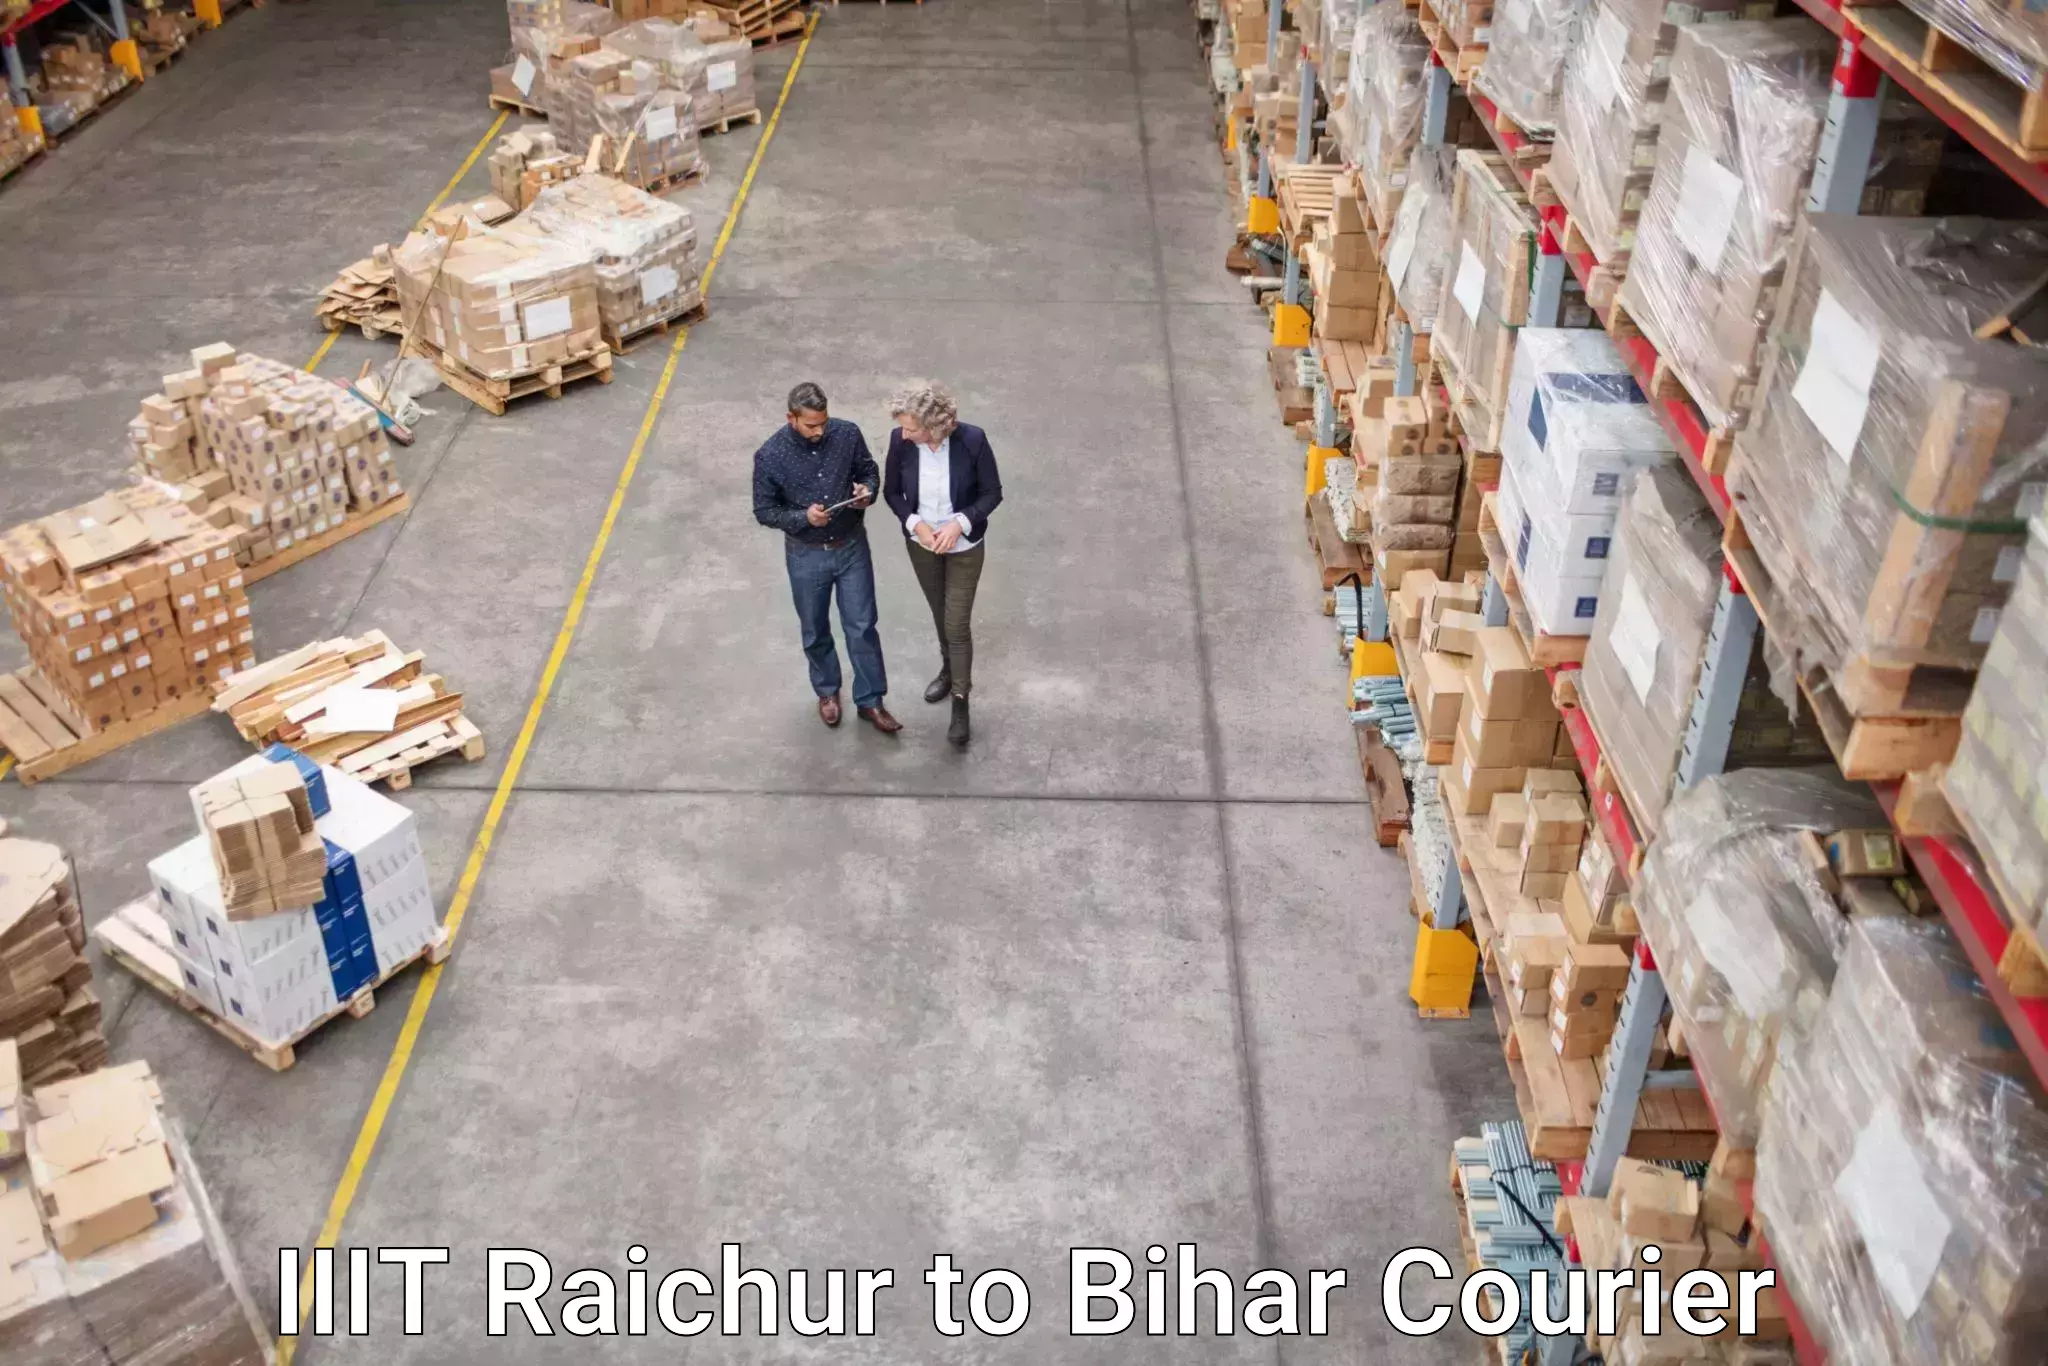 Trackable shipping service IIIT Raichur to Bihar